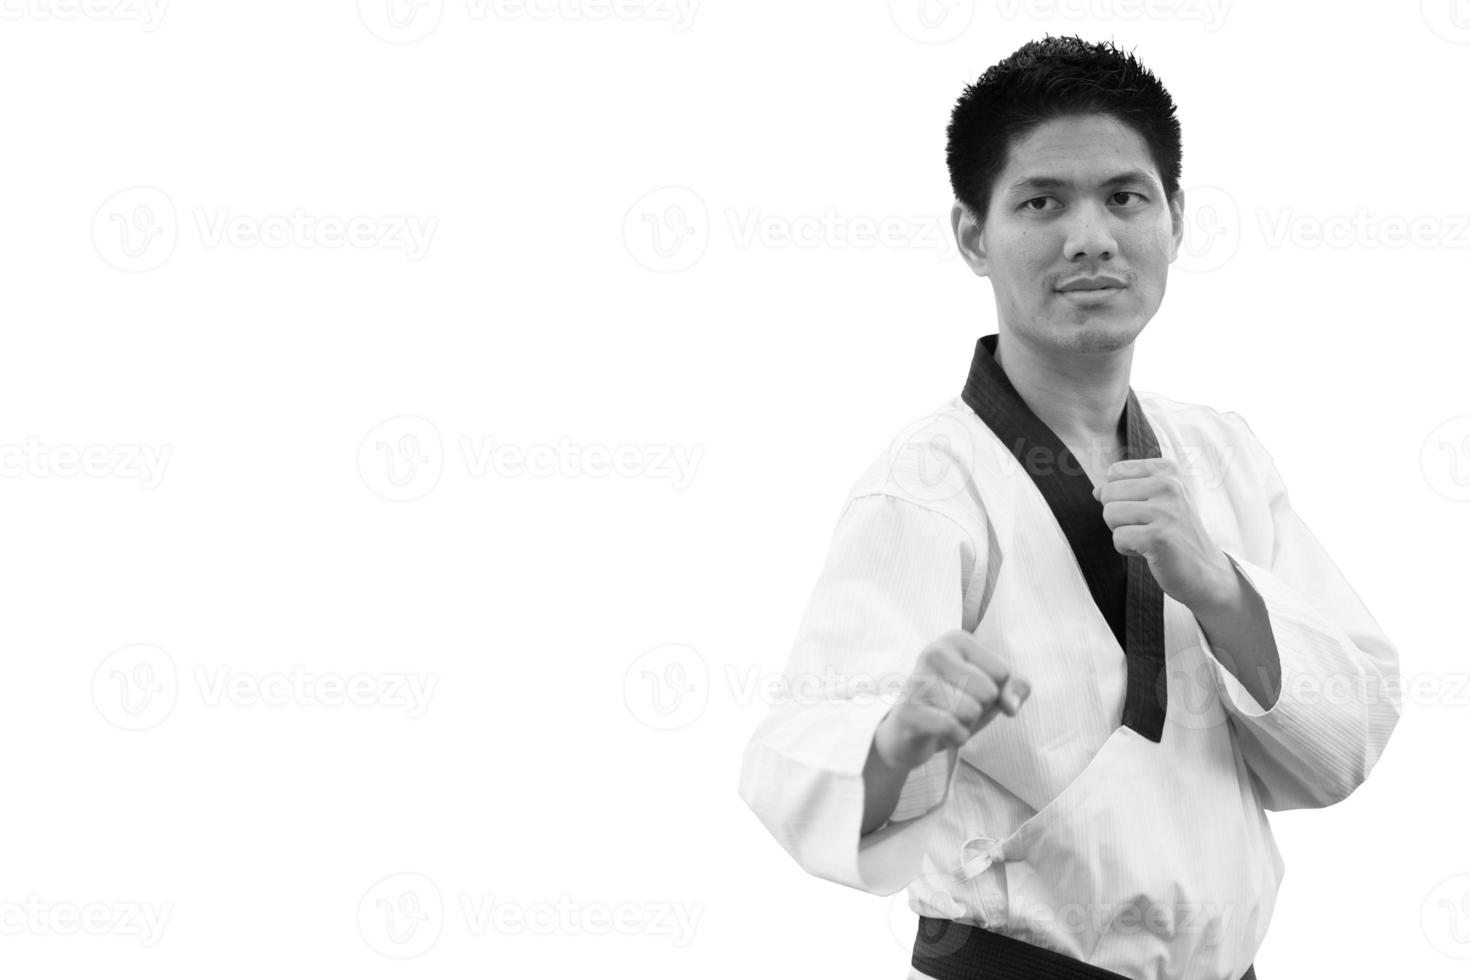 schwarzer gürtel taekwondo man guard stehend auf weiß mit beschneidungspfad foto